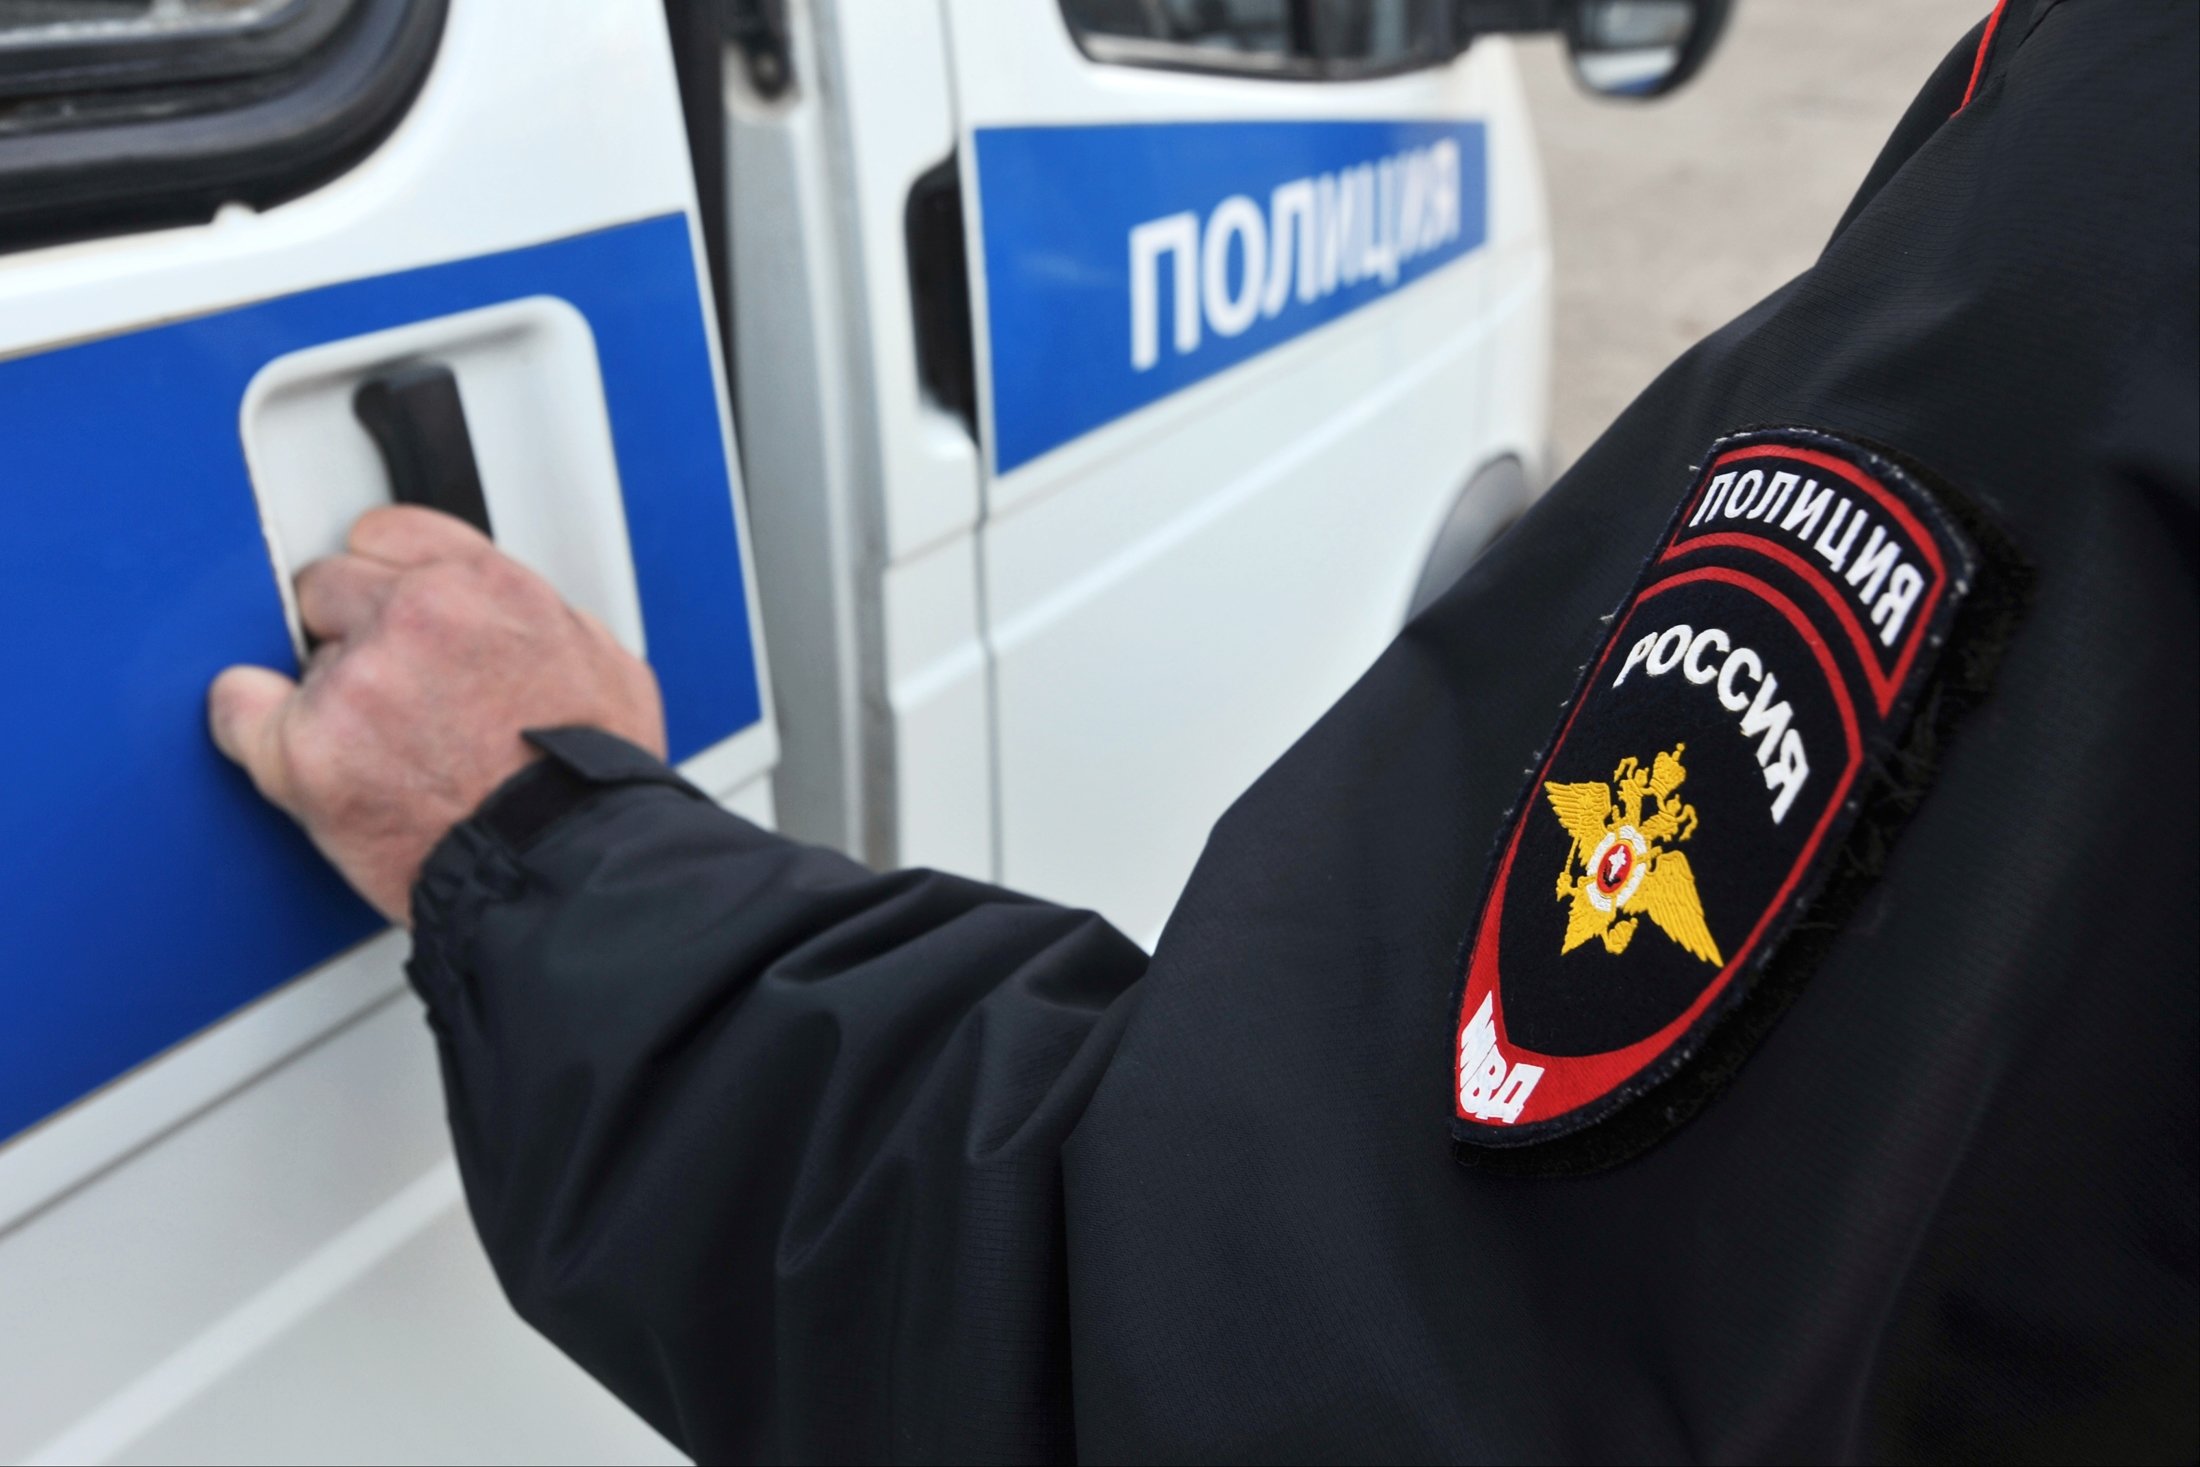 Пропавший житель Волгограда нашелся в московском отделе полиции. Его арестовали на семь суток из-за встречи Навального в аэропорту